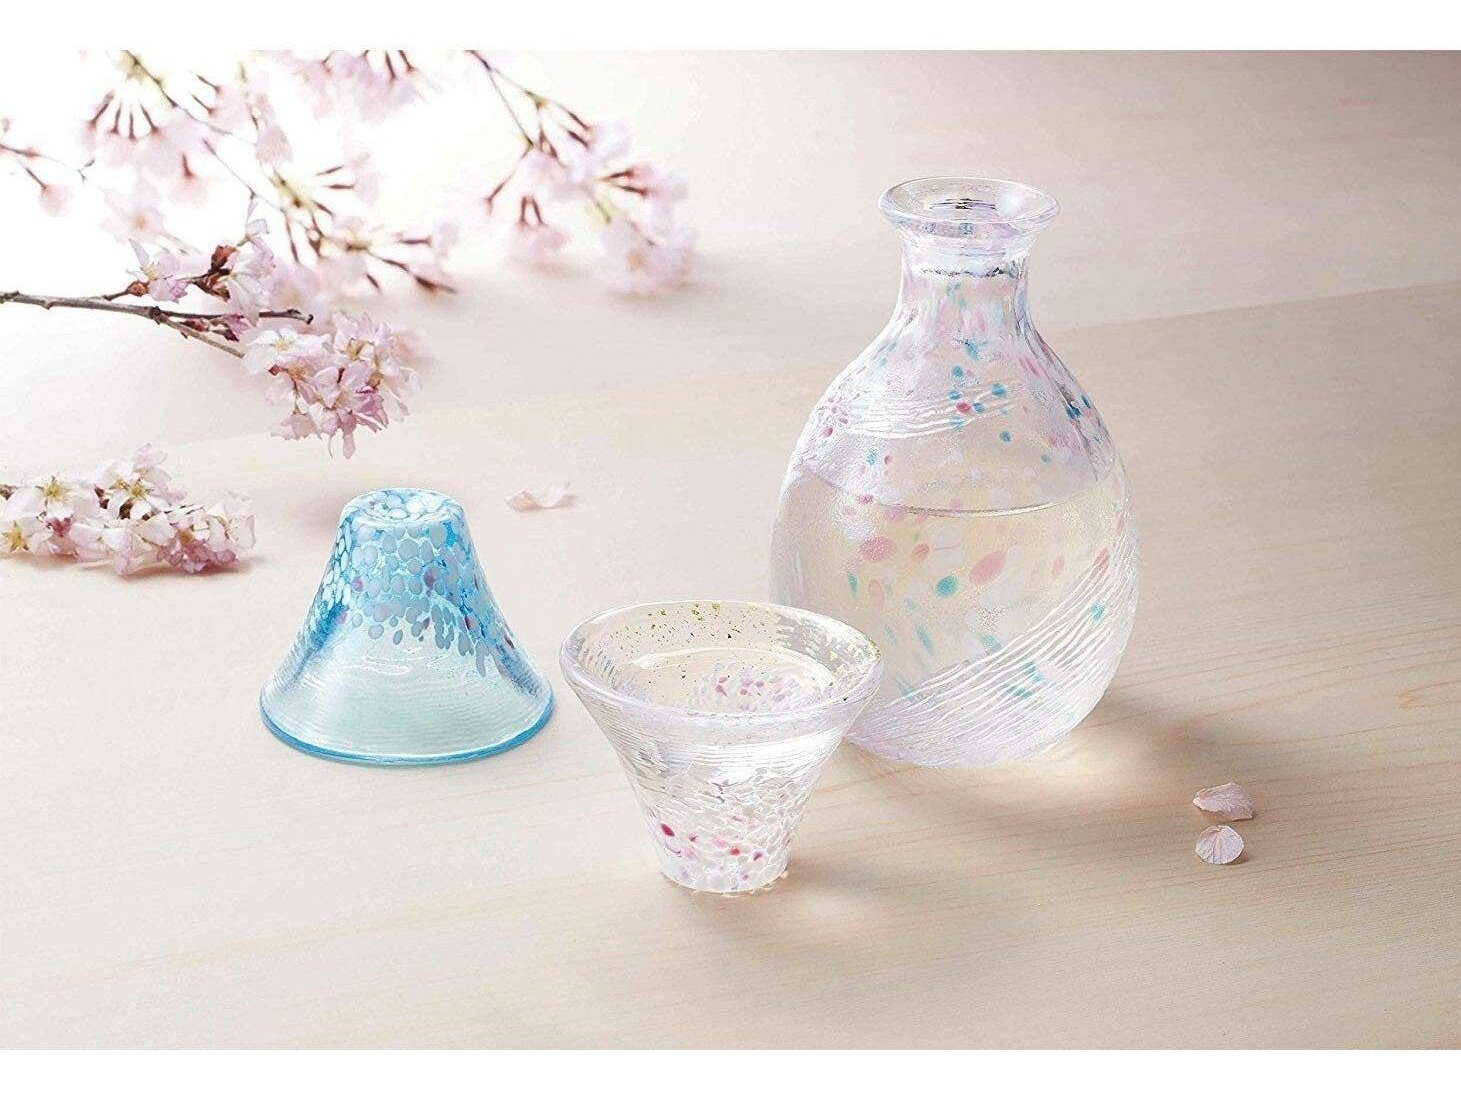 Toyo Sasaki Glass Sakura Fuji Japanese Sake Bottle Cup Pcs Set